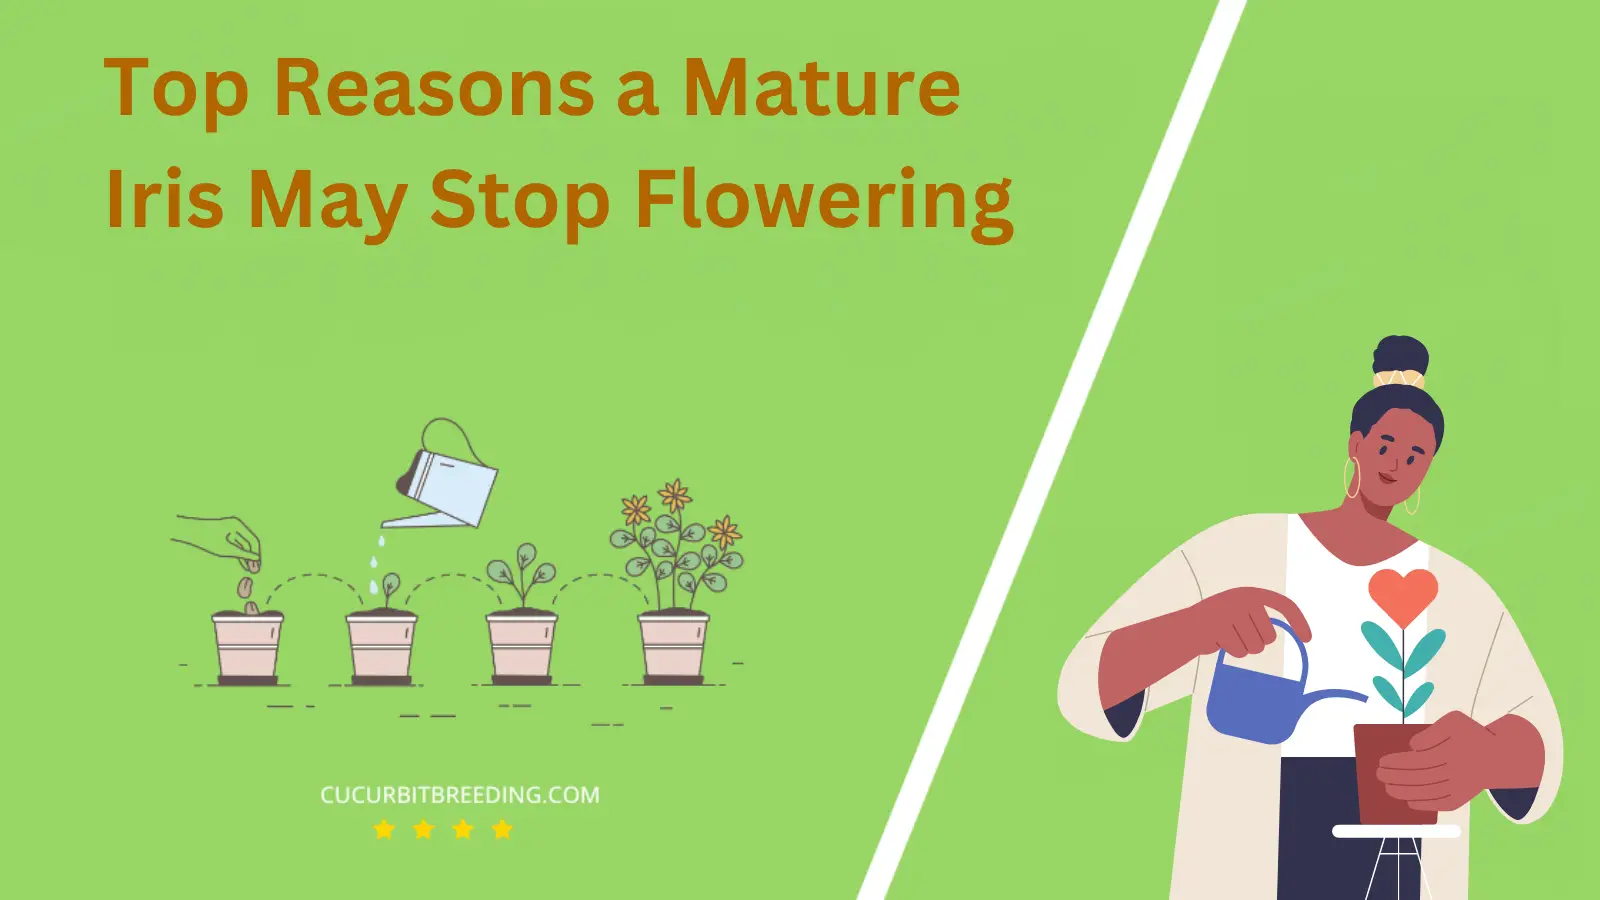 Top Reasons a Mature Iris May Stop Flowering